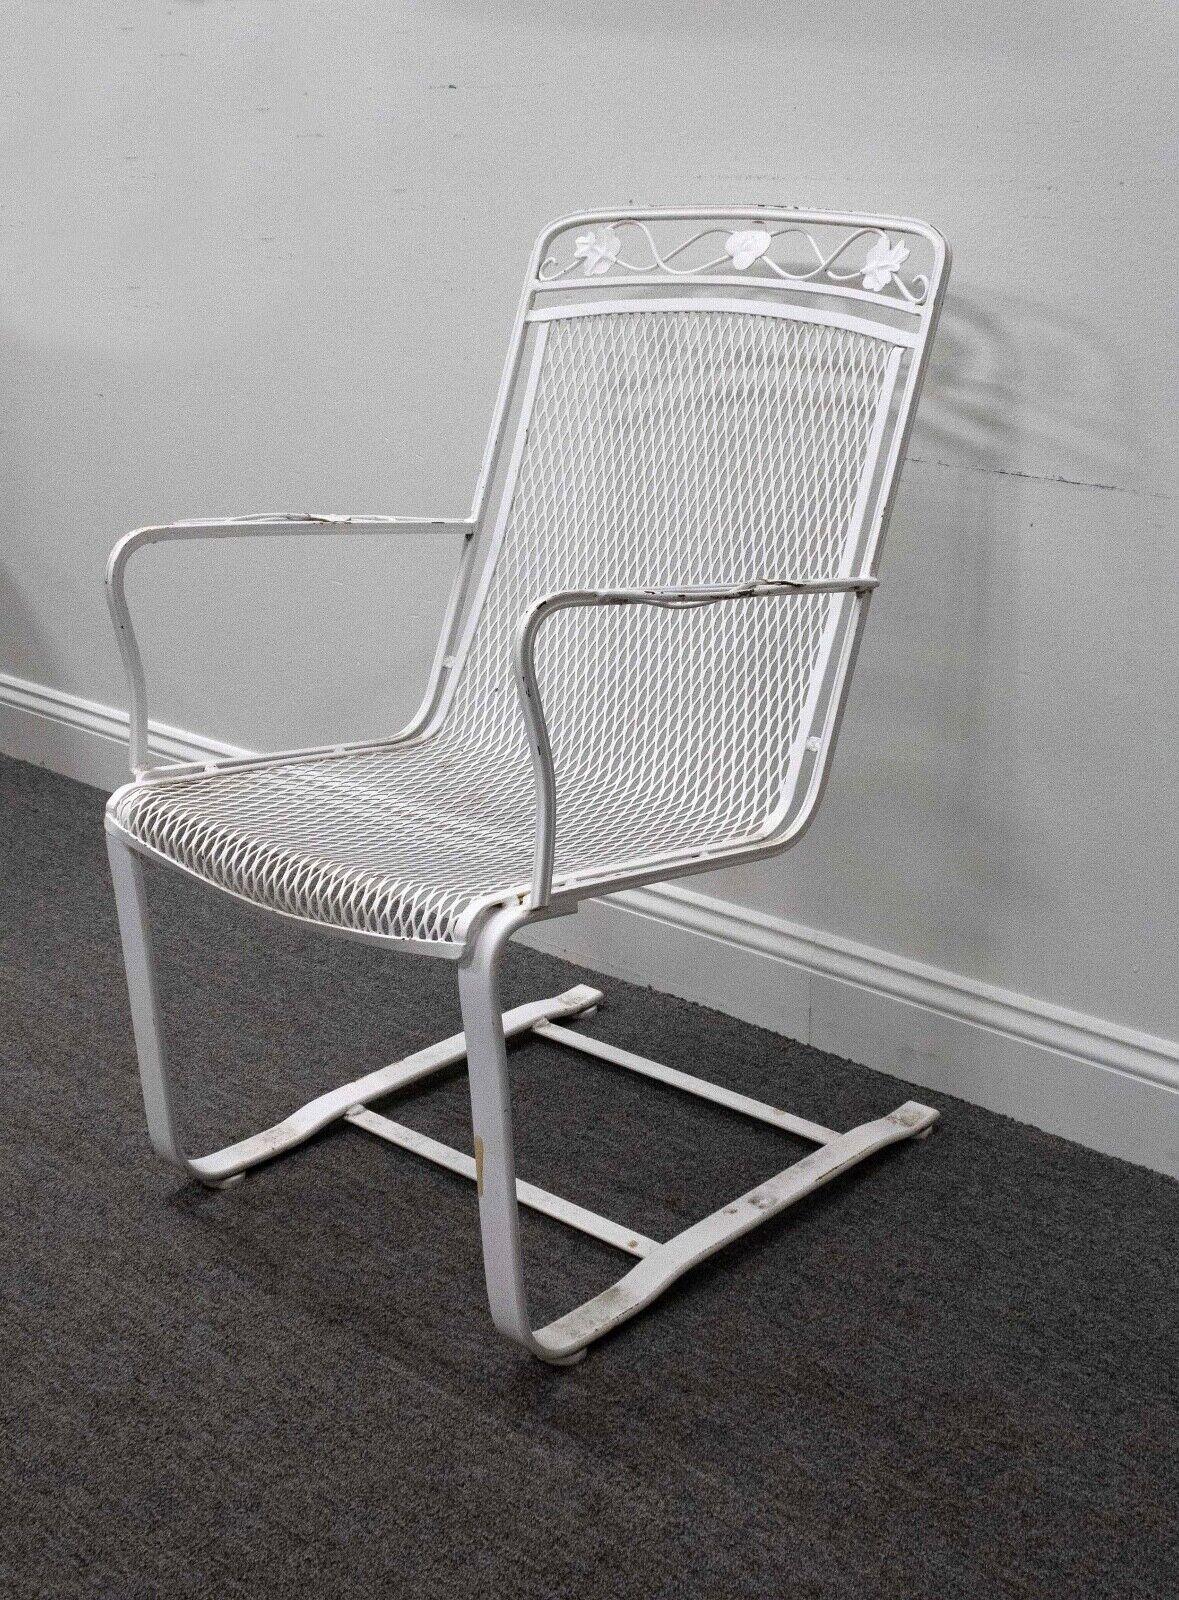 Cette paire de fauteuils à bascule Flex en fer forgé de Woodard Vintage exhale le charme intemporel du design moderne du milieu du siècle dernier. Fabriqués par Woodard, un nom renommé dans le domaine du mobilier en fer forgé, ces fauteuils à